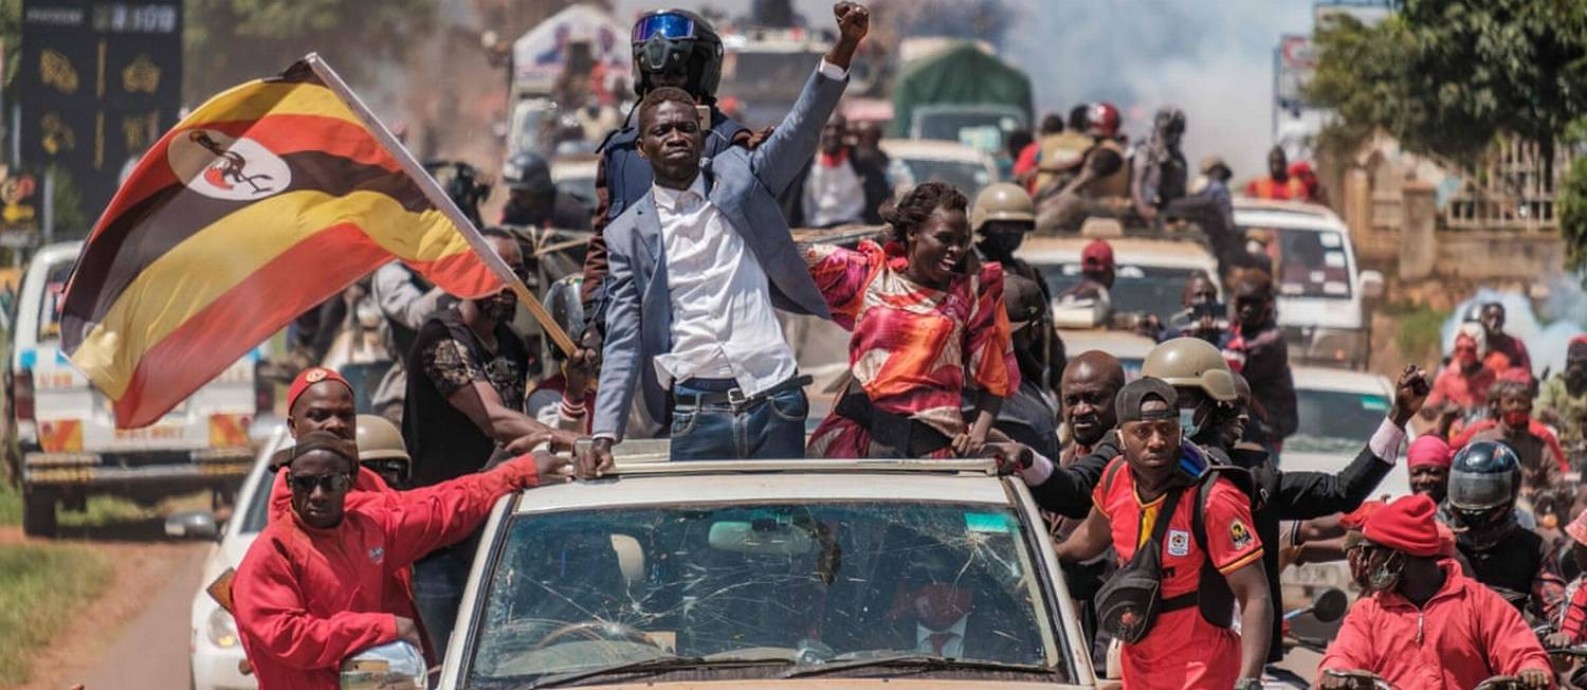 O ex-cantor e deputado Bobi Wine em campanha em Uganda. Candidato tenta derrotar o atual presidente Yoweri Museveni, há 35 anos no poder Foto: Sumy Sadurni / AFP